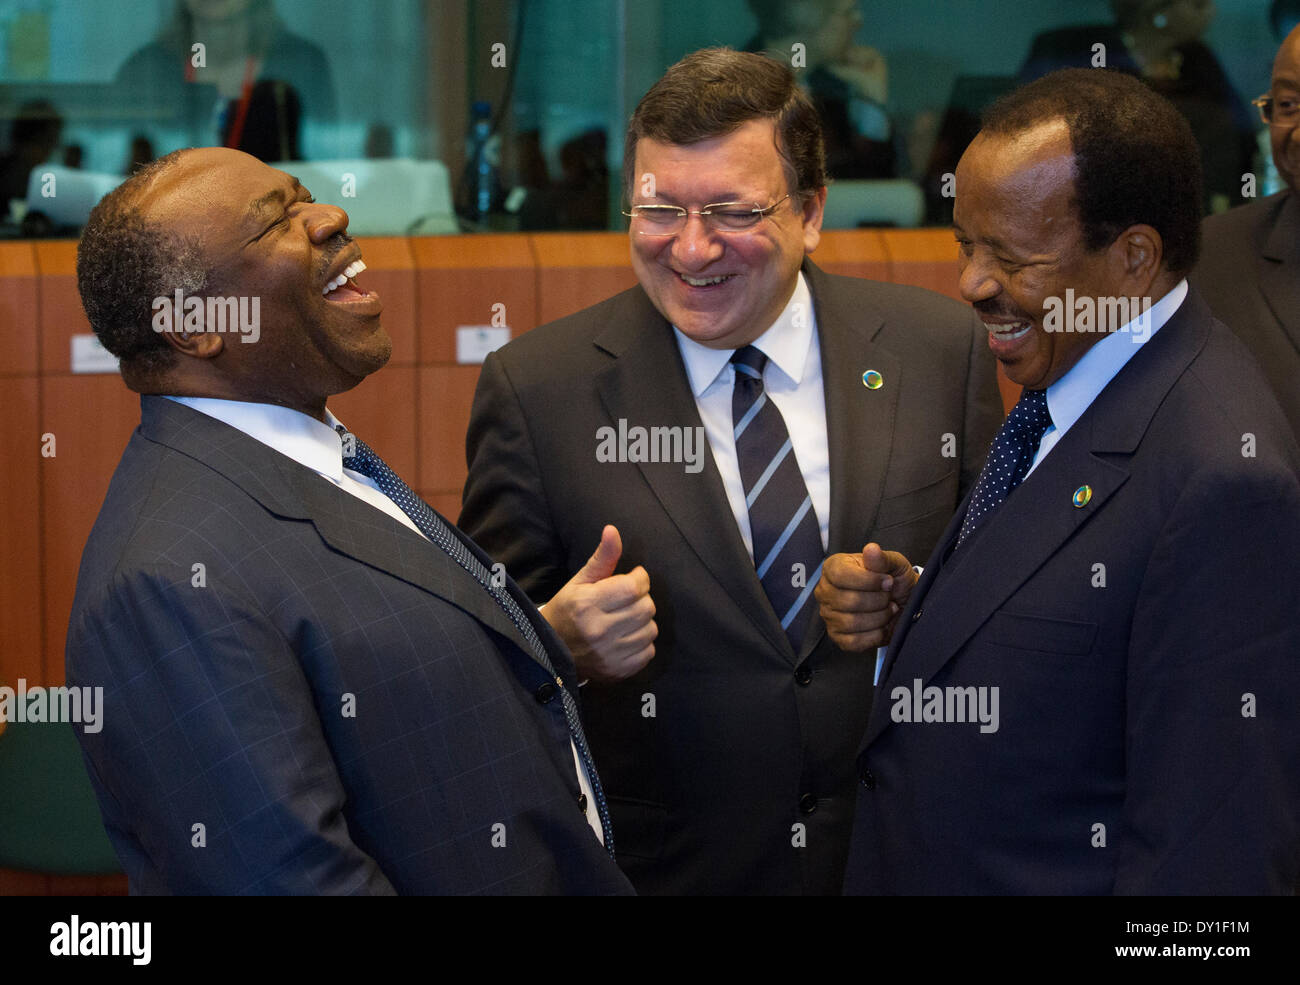 Brussselss, Belgique. 3 avril, 2014. En photo pendant le Sommet UE-Afrique tenu à Bruxelles étaient, de gauche à droite, Ali Bongo Ondimba, Président du Gabon. Jose Manuel Barroso, président de la Commission européenne. Paul Biya, Président, Cameroun. Banque D'Images